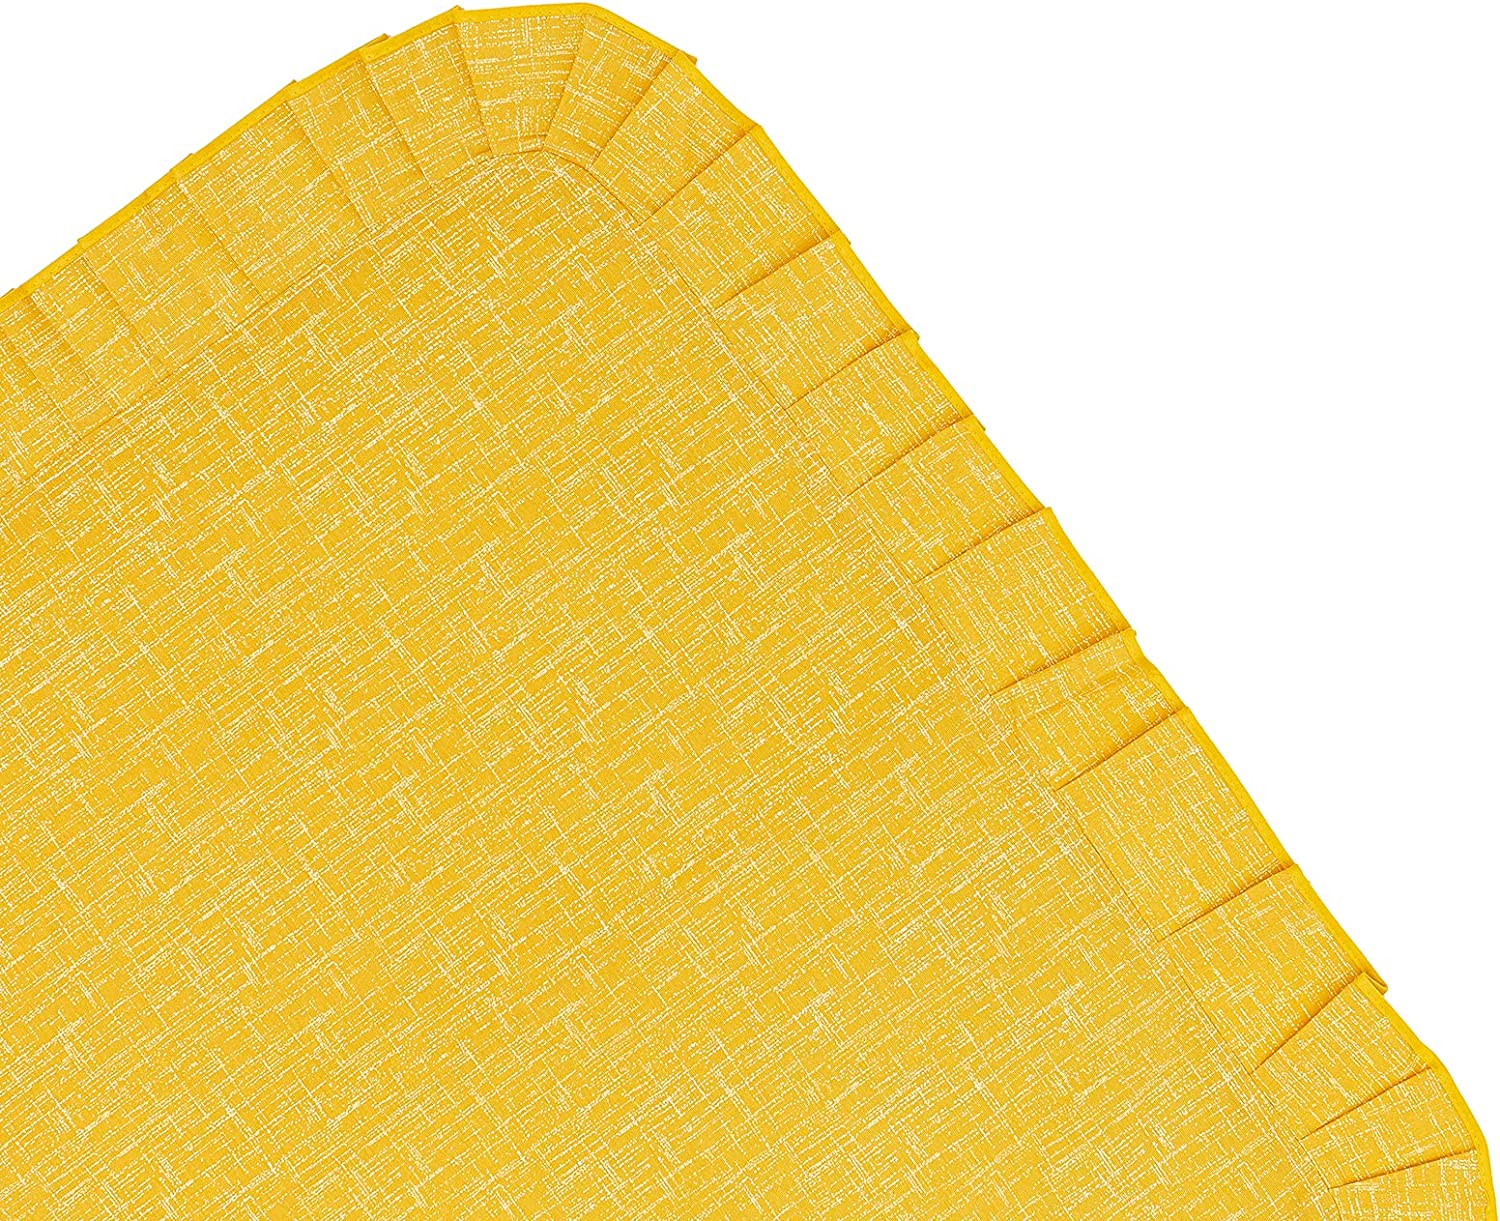 Tovaglia Copritavolo Plastificata Rotonda Unito Stile Shabby Chic Antimacchia Impermeabile Tavola da Pranzo Cucina Giardino diametro 130